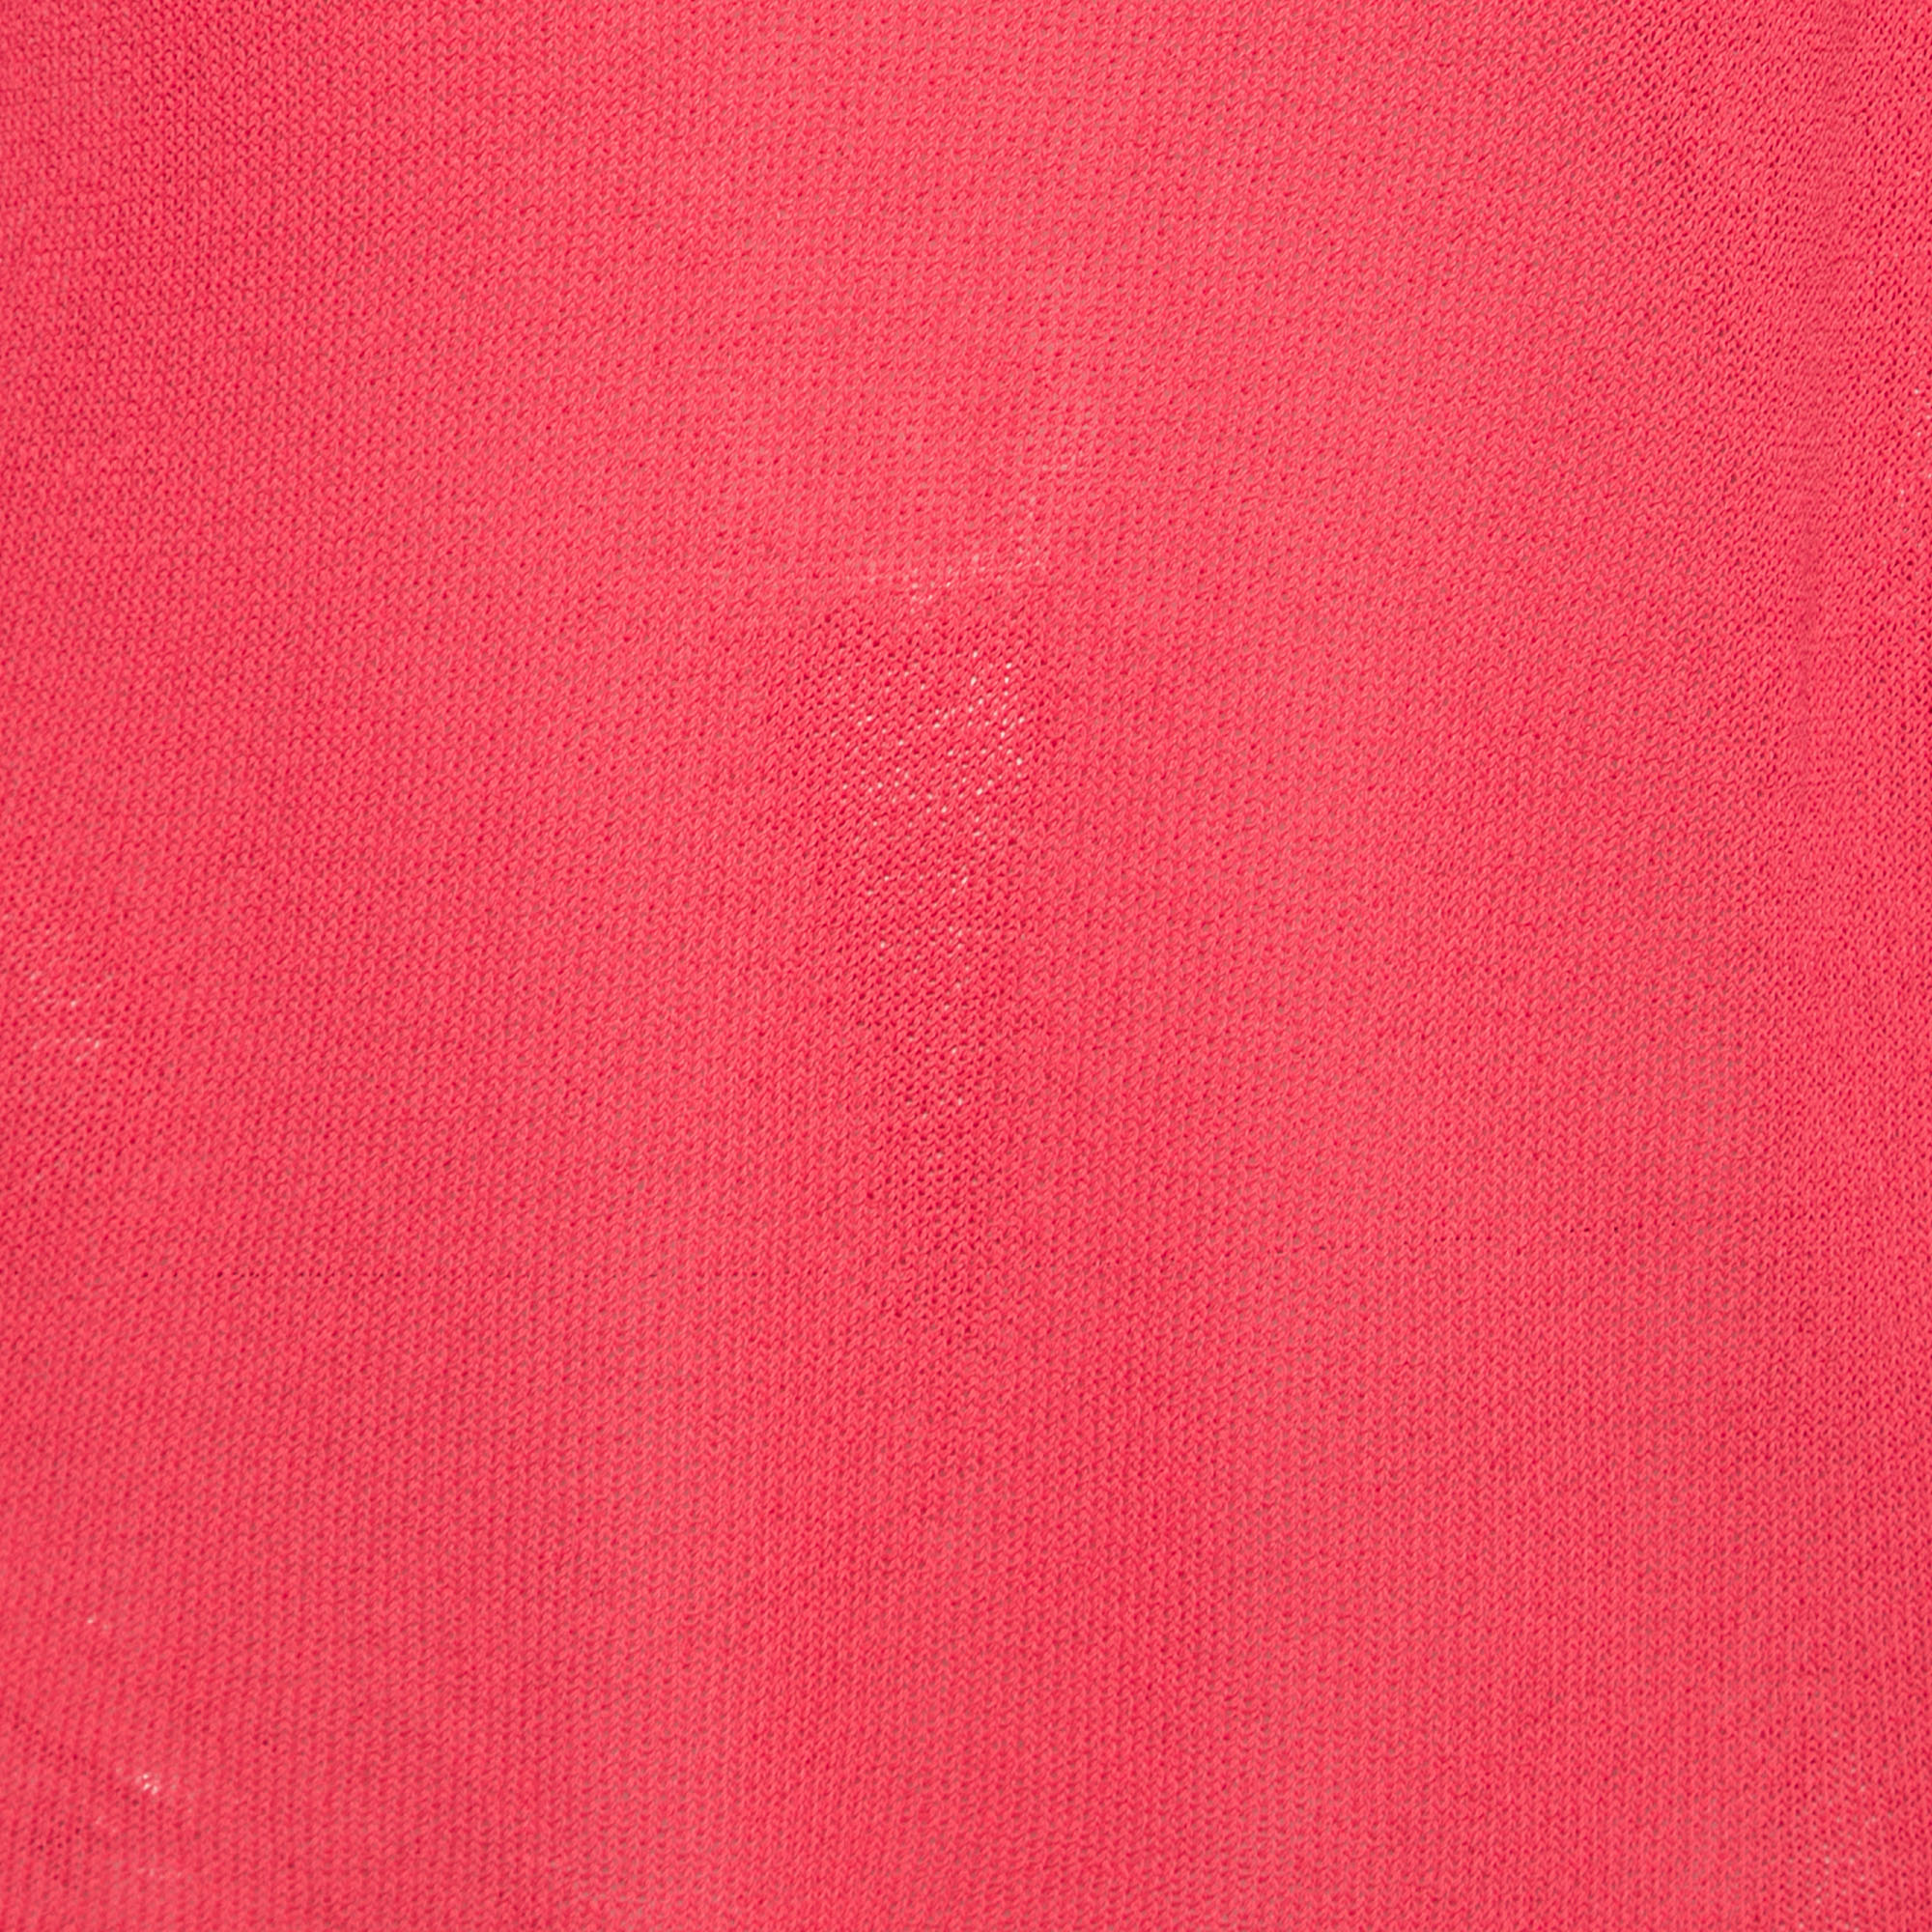 Emporio Armani Vintage Pink Cut Out Detail Blouse L